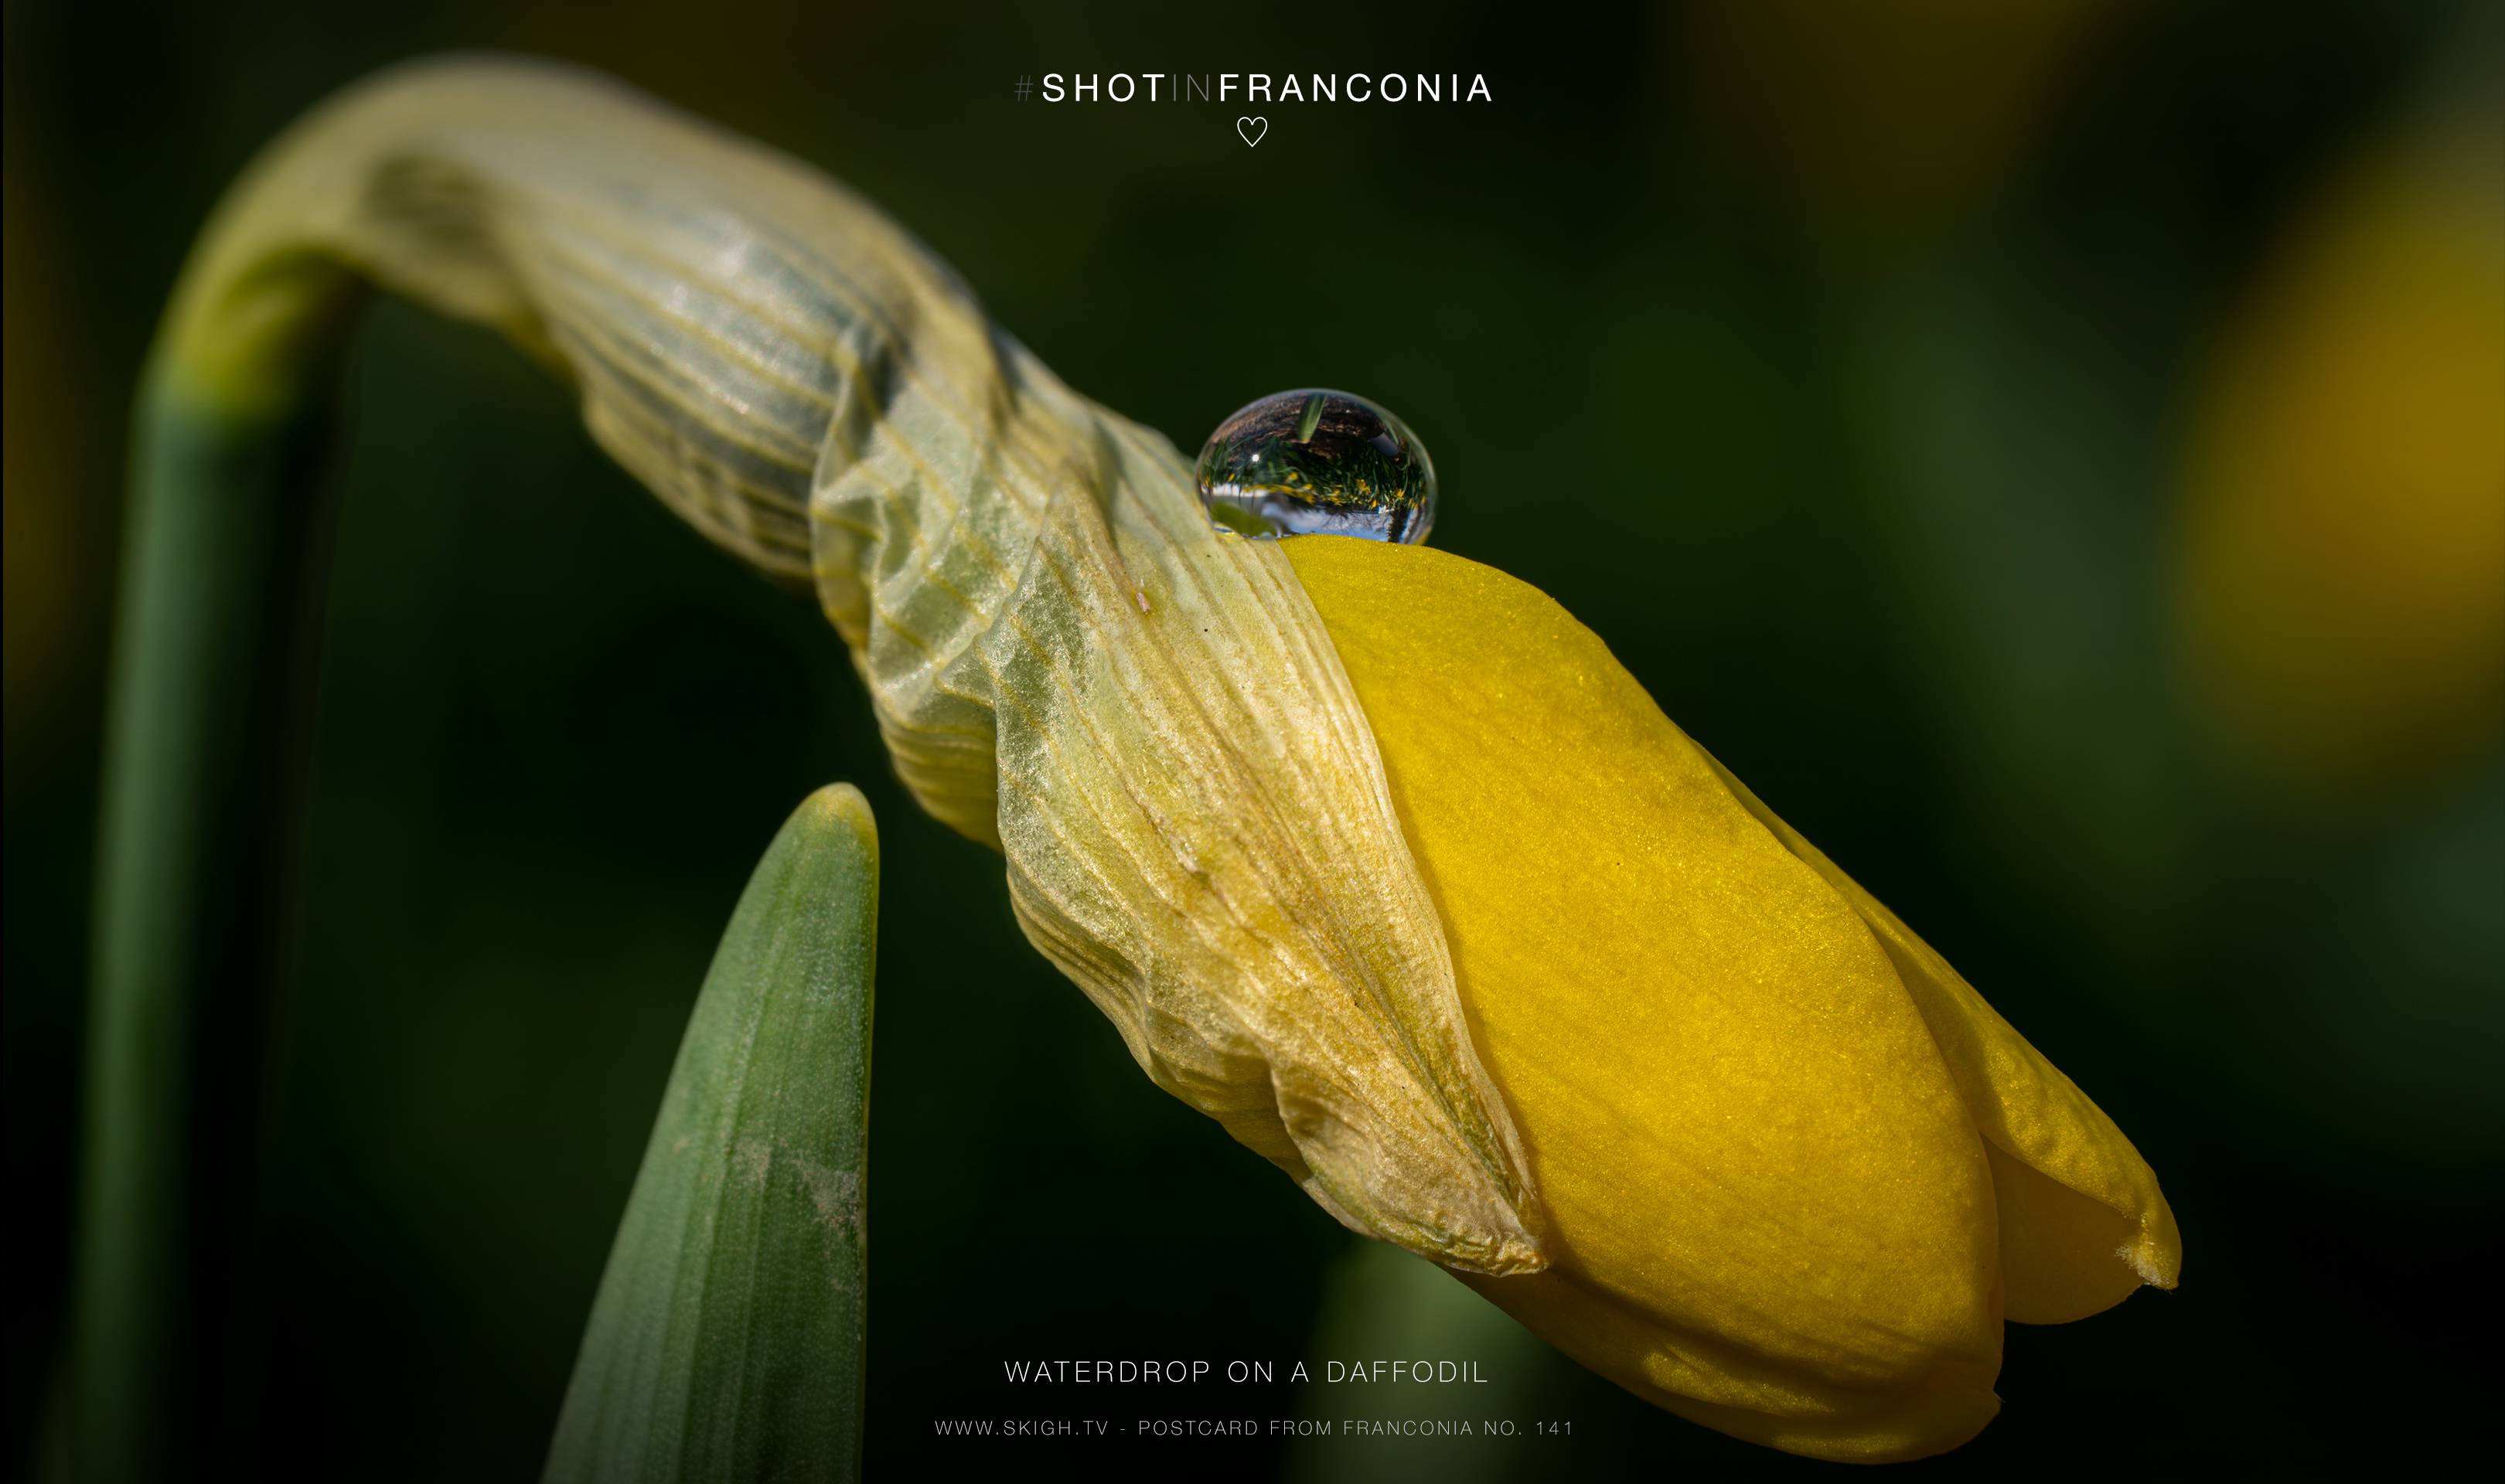 Waterdrop on a daffodil